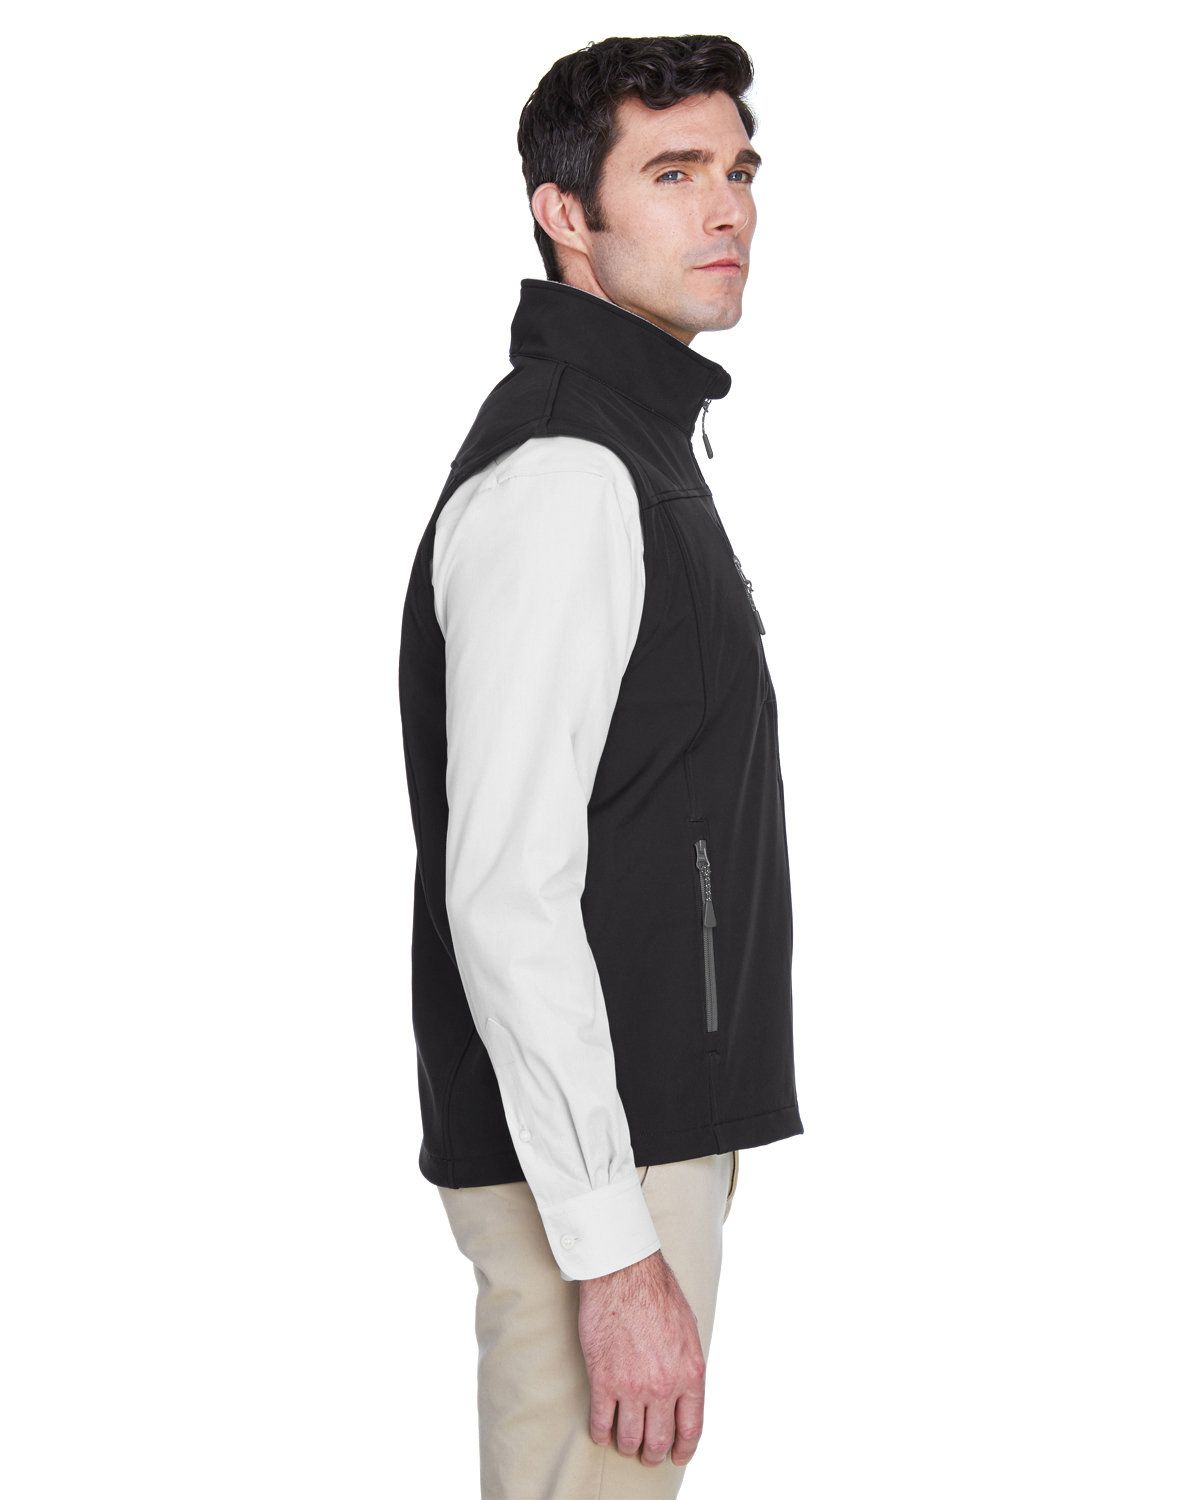 'Devon & Jones D996 Men's Soft Shell Vest'